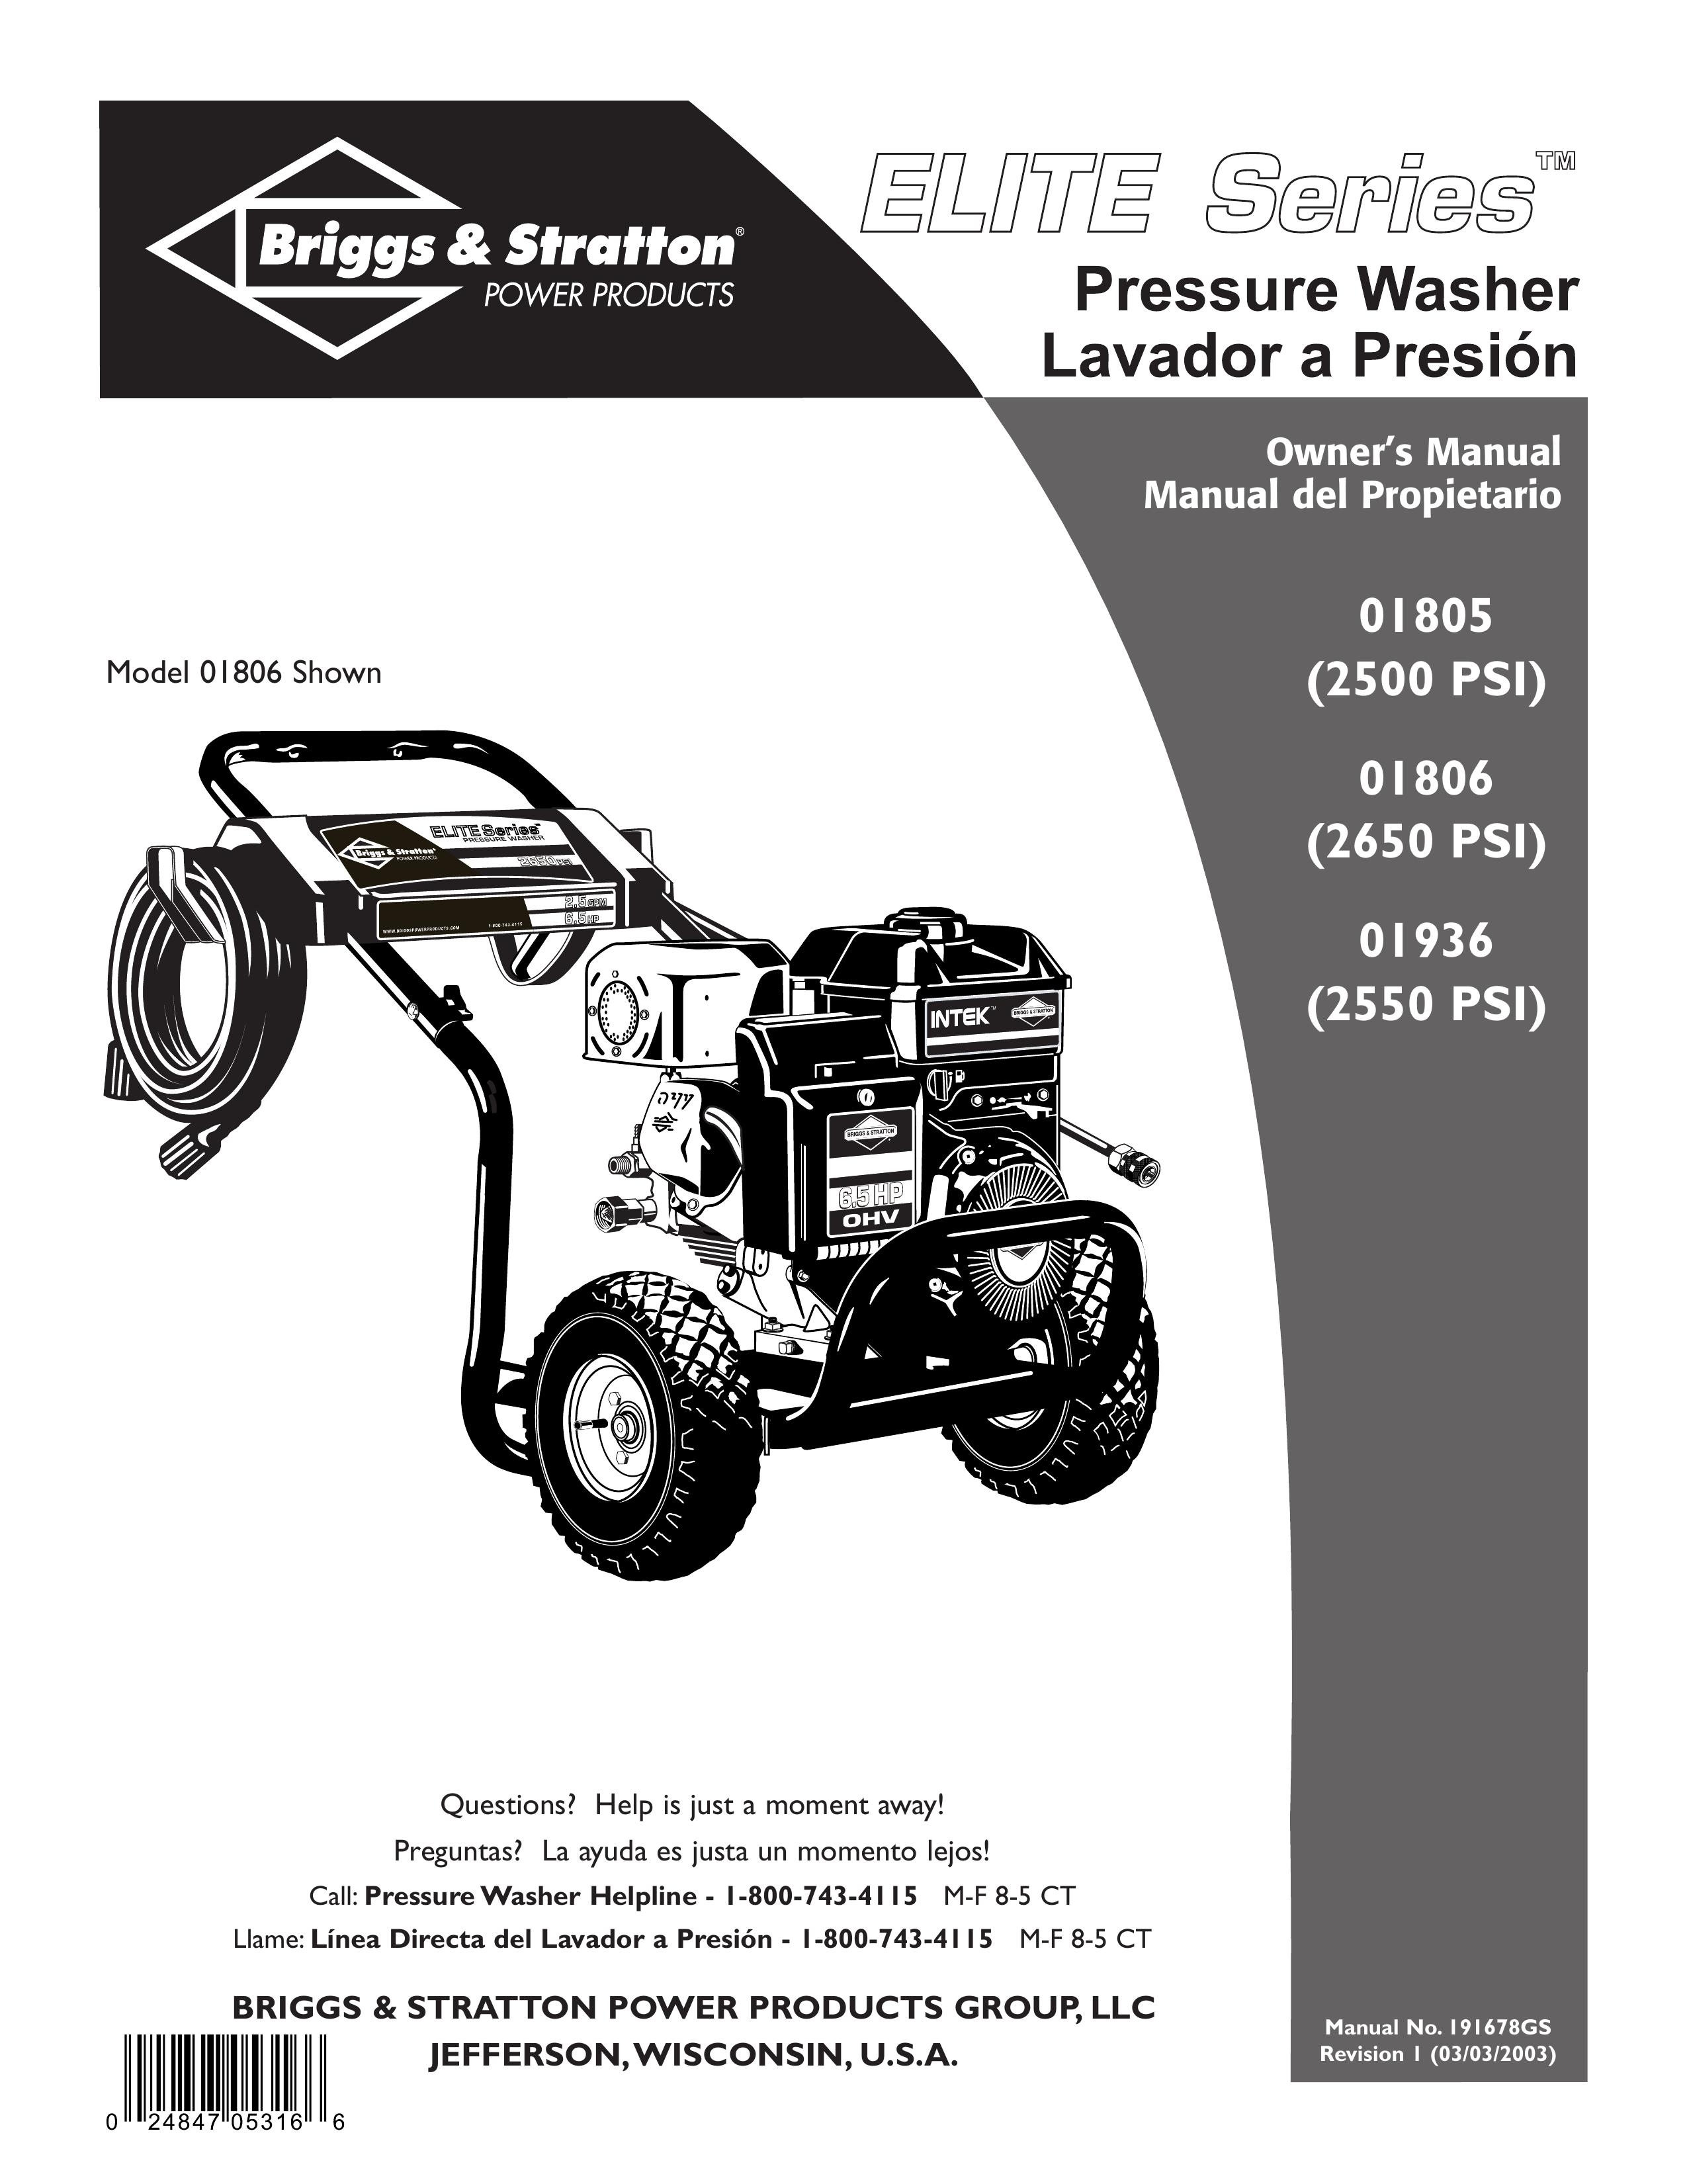 Briggs & Stratton 01936 Pressure Washer User Manual